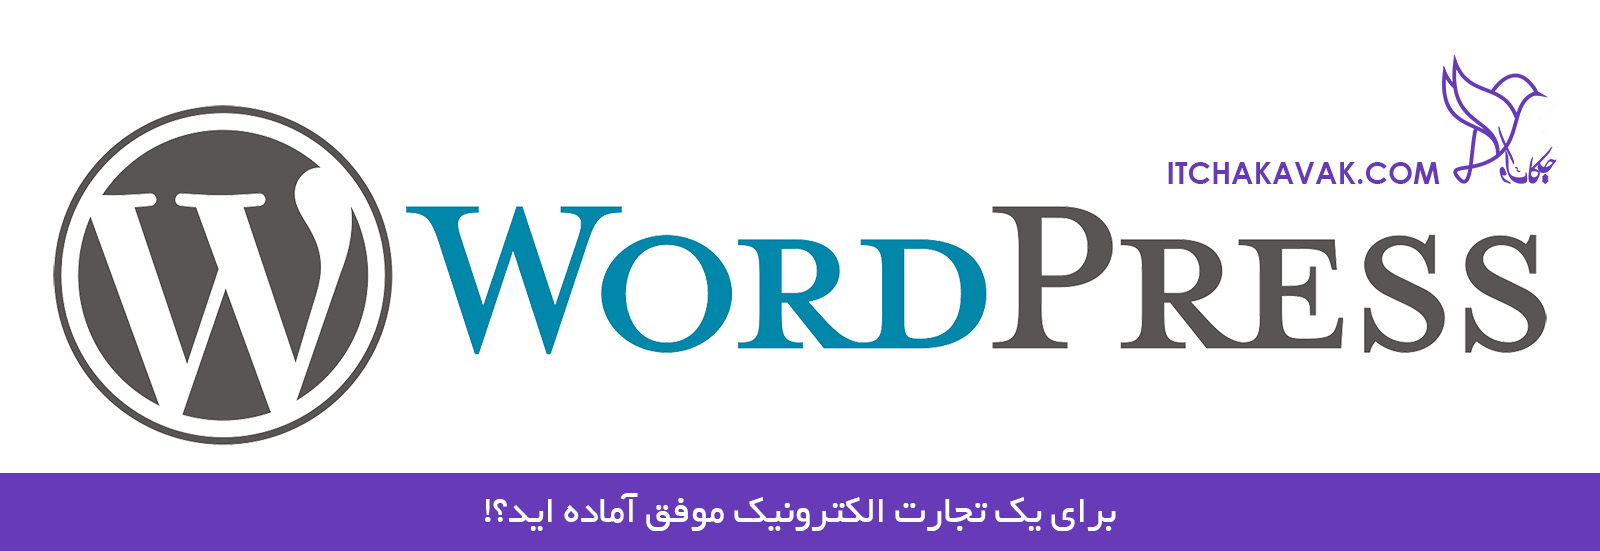 آموزش طراحی سایت وردپرسی در یزد